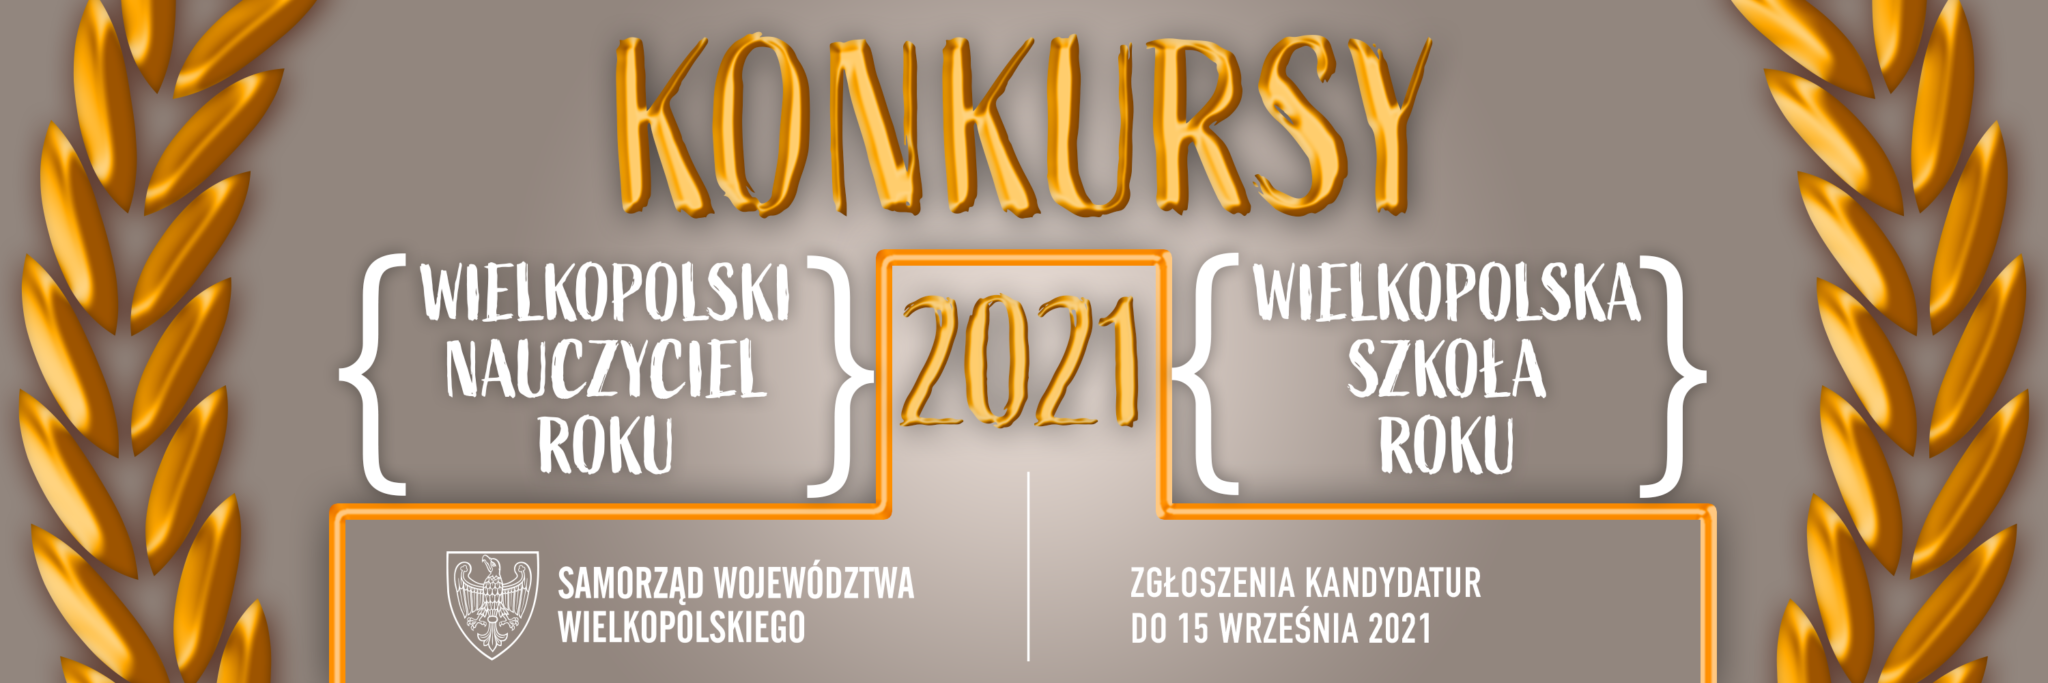 Informacja (grafika wektorowa) o Konkursie Wielkopolski Nauczyciel Roku oraz Wielkopolska Szkoła Roku. Termin zgłaszania kandydatur do 15 września 2021 r.